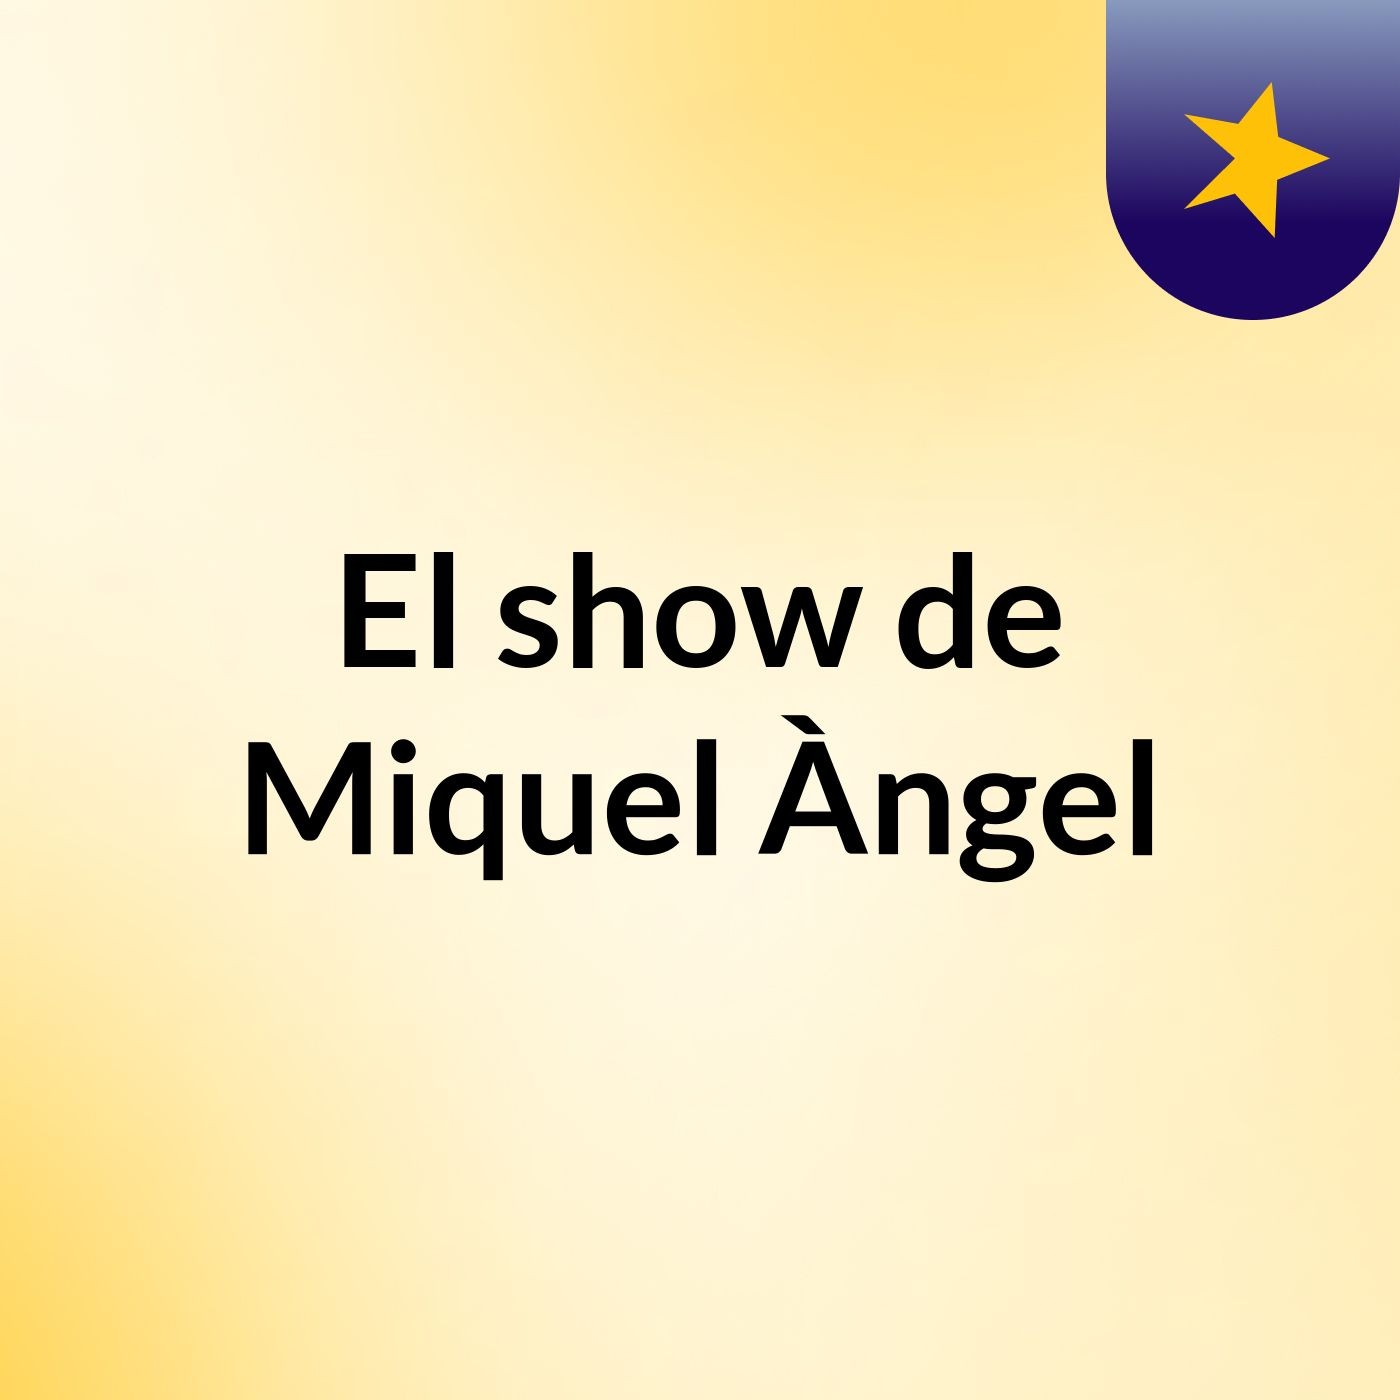 El show de Miquel Àngel